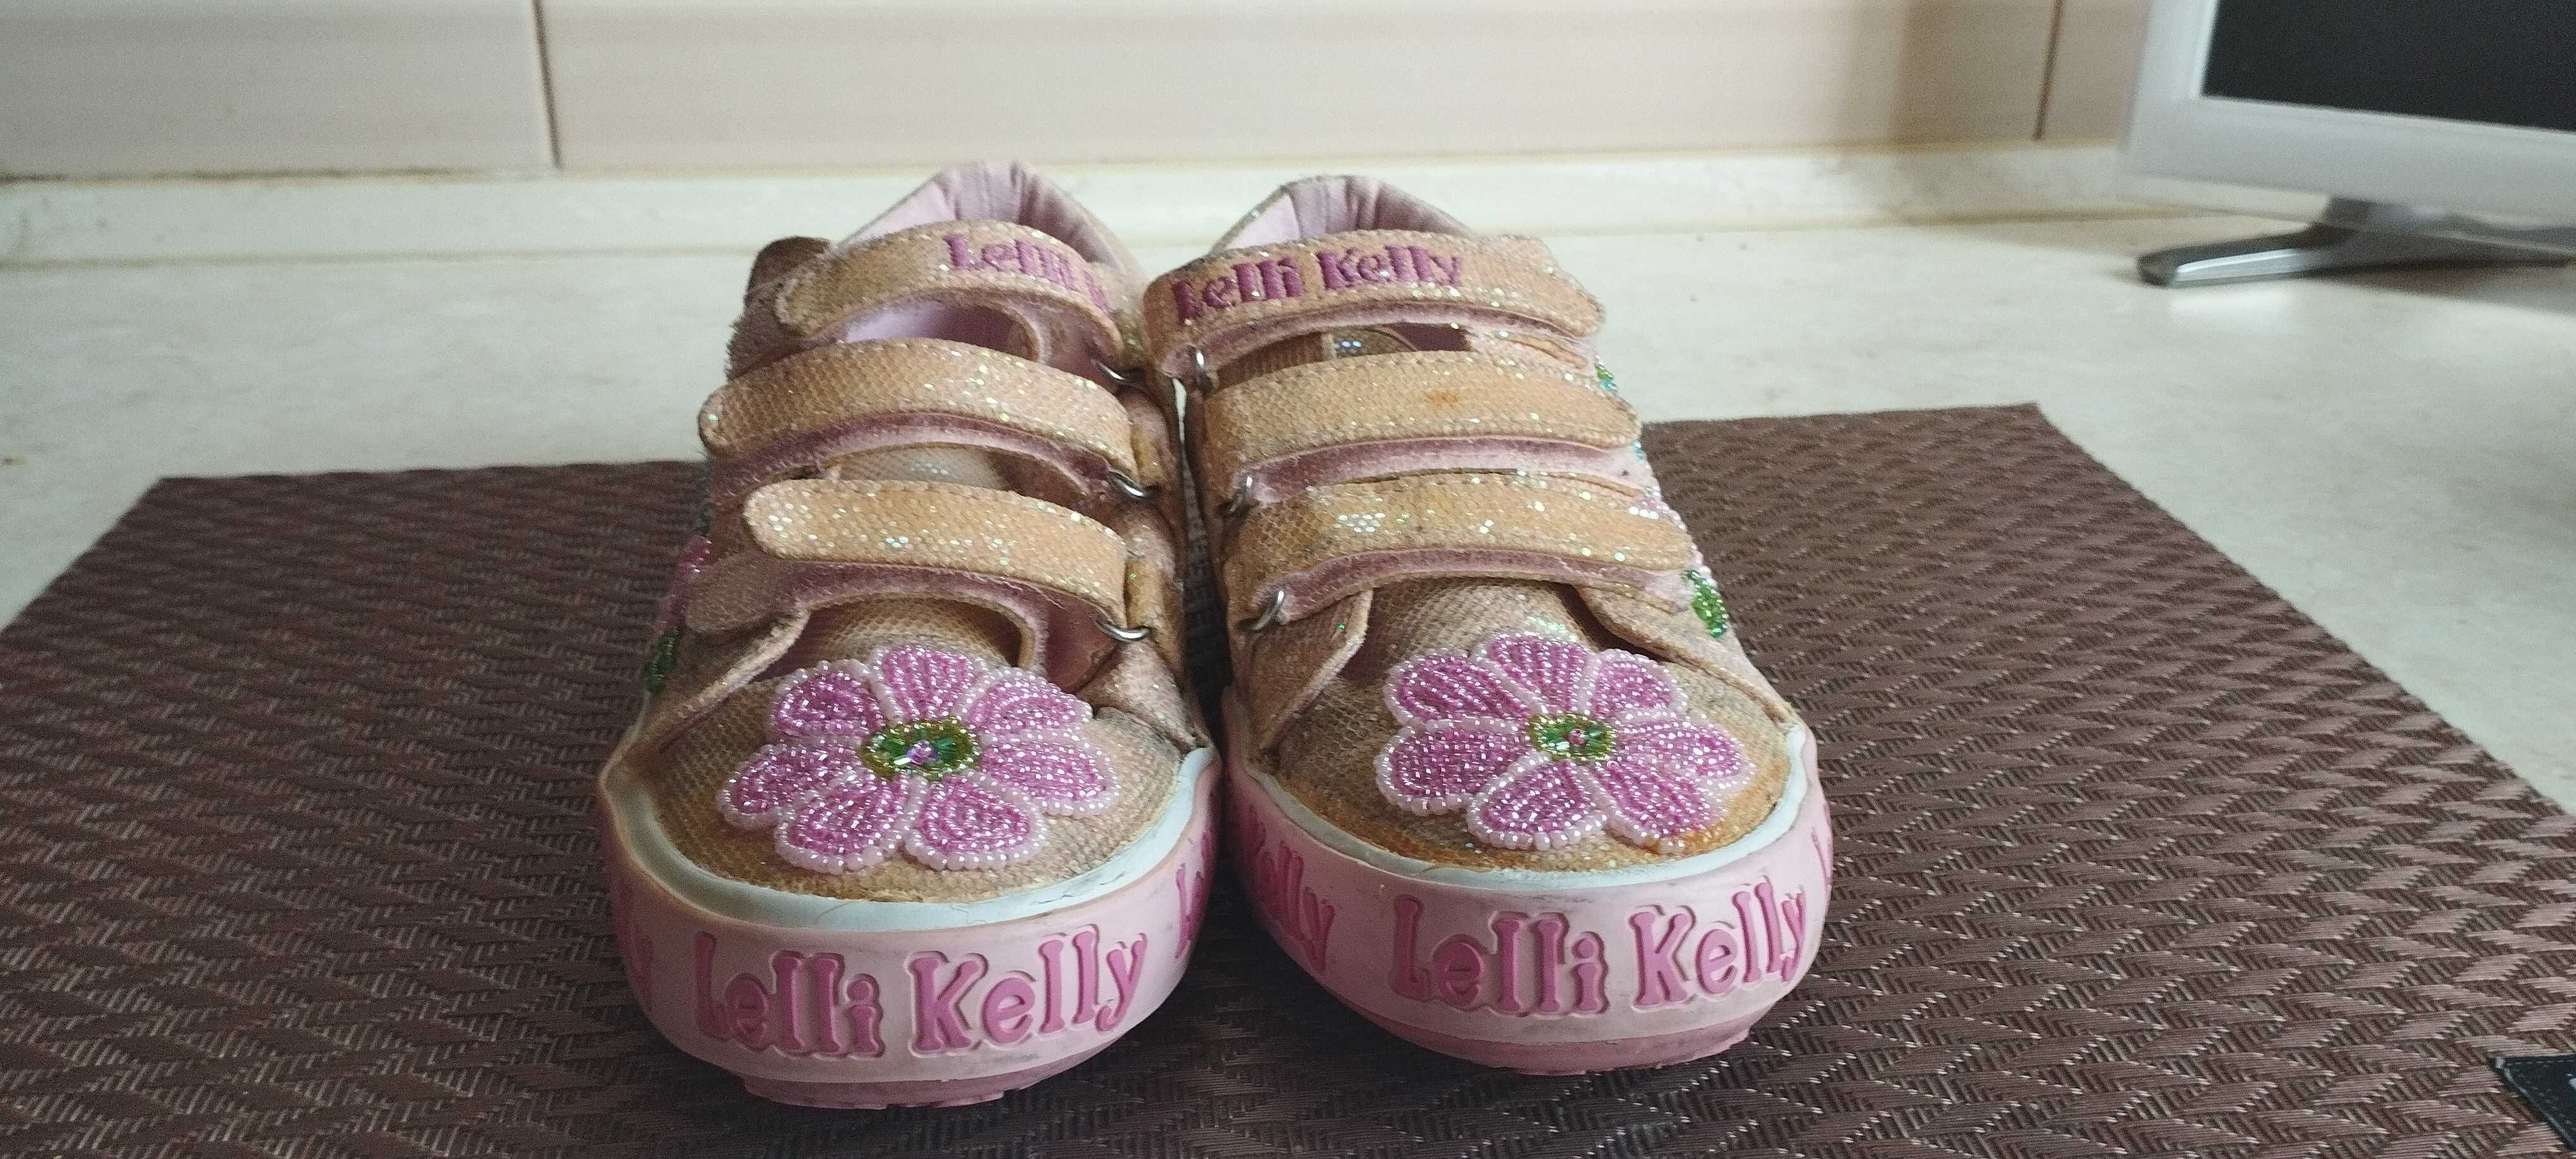 Кеди, кросівки (кеды, кроссовки)  Lelli Kelly. Розмір 36. Оригінал.